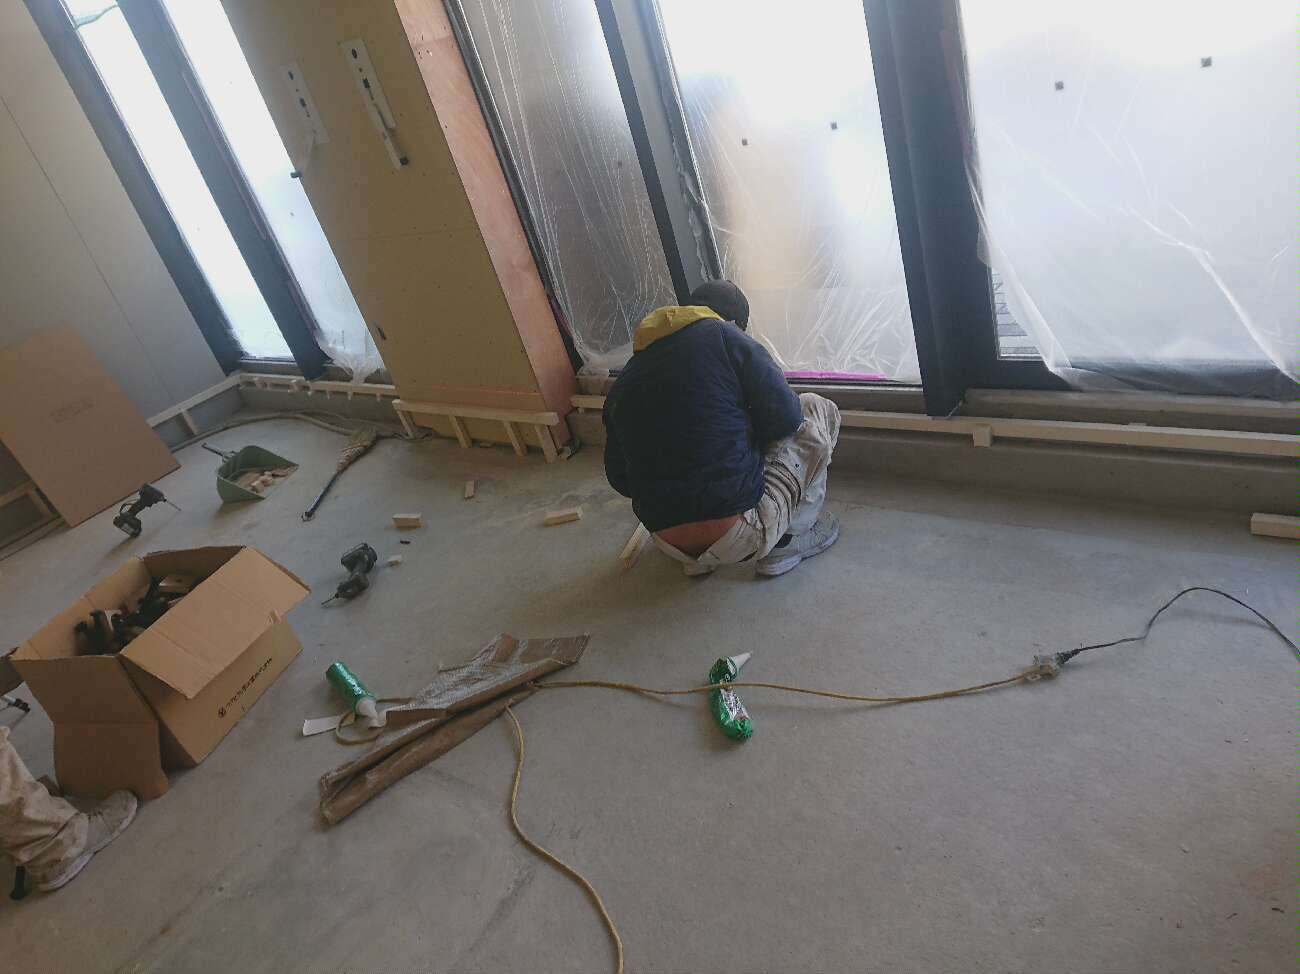 東京都大田区の戸建て住宅にて、置床工事を行いました。（フリーフロアEP）【秀和建工】